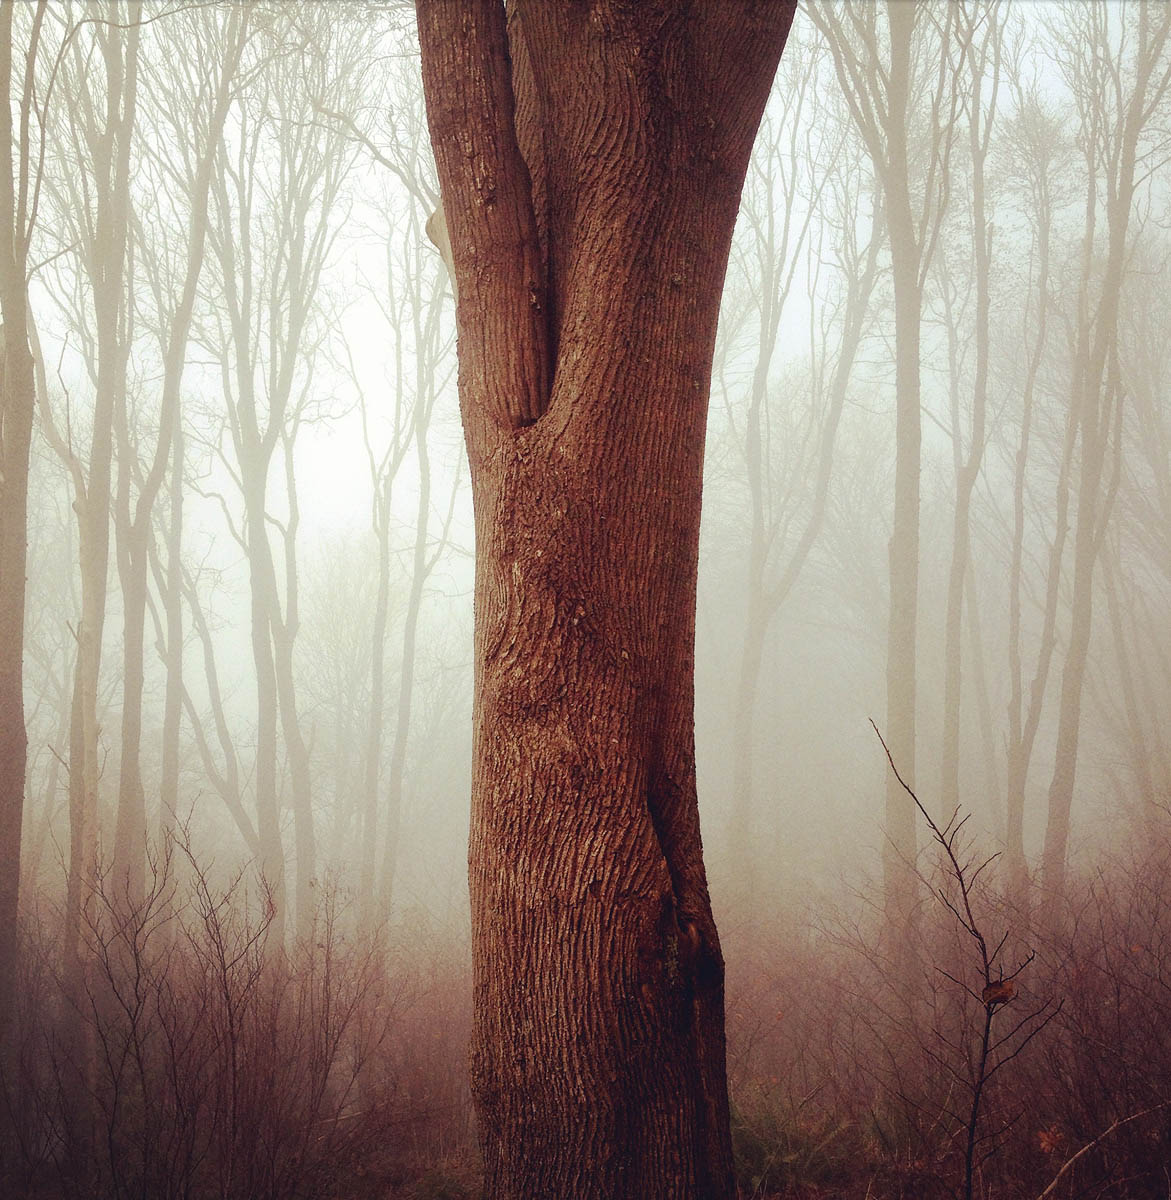 Trees_Fog